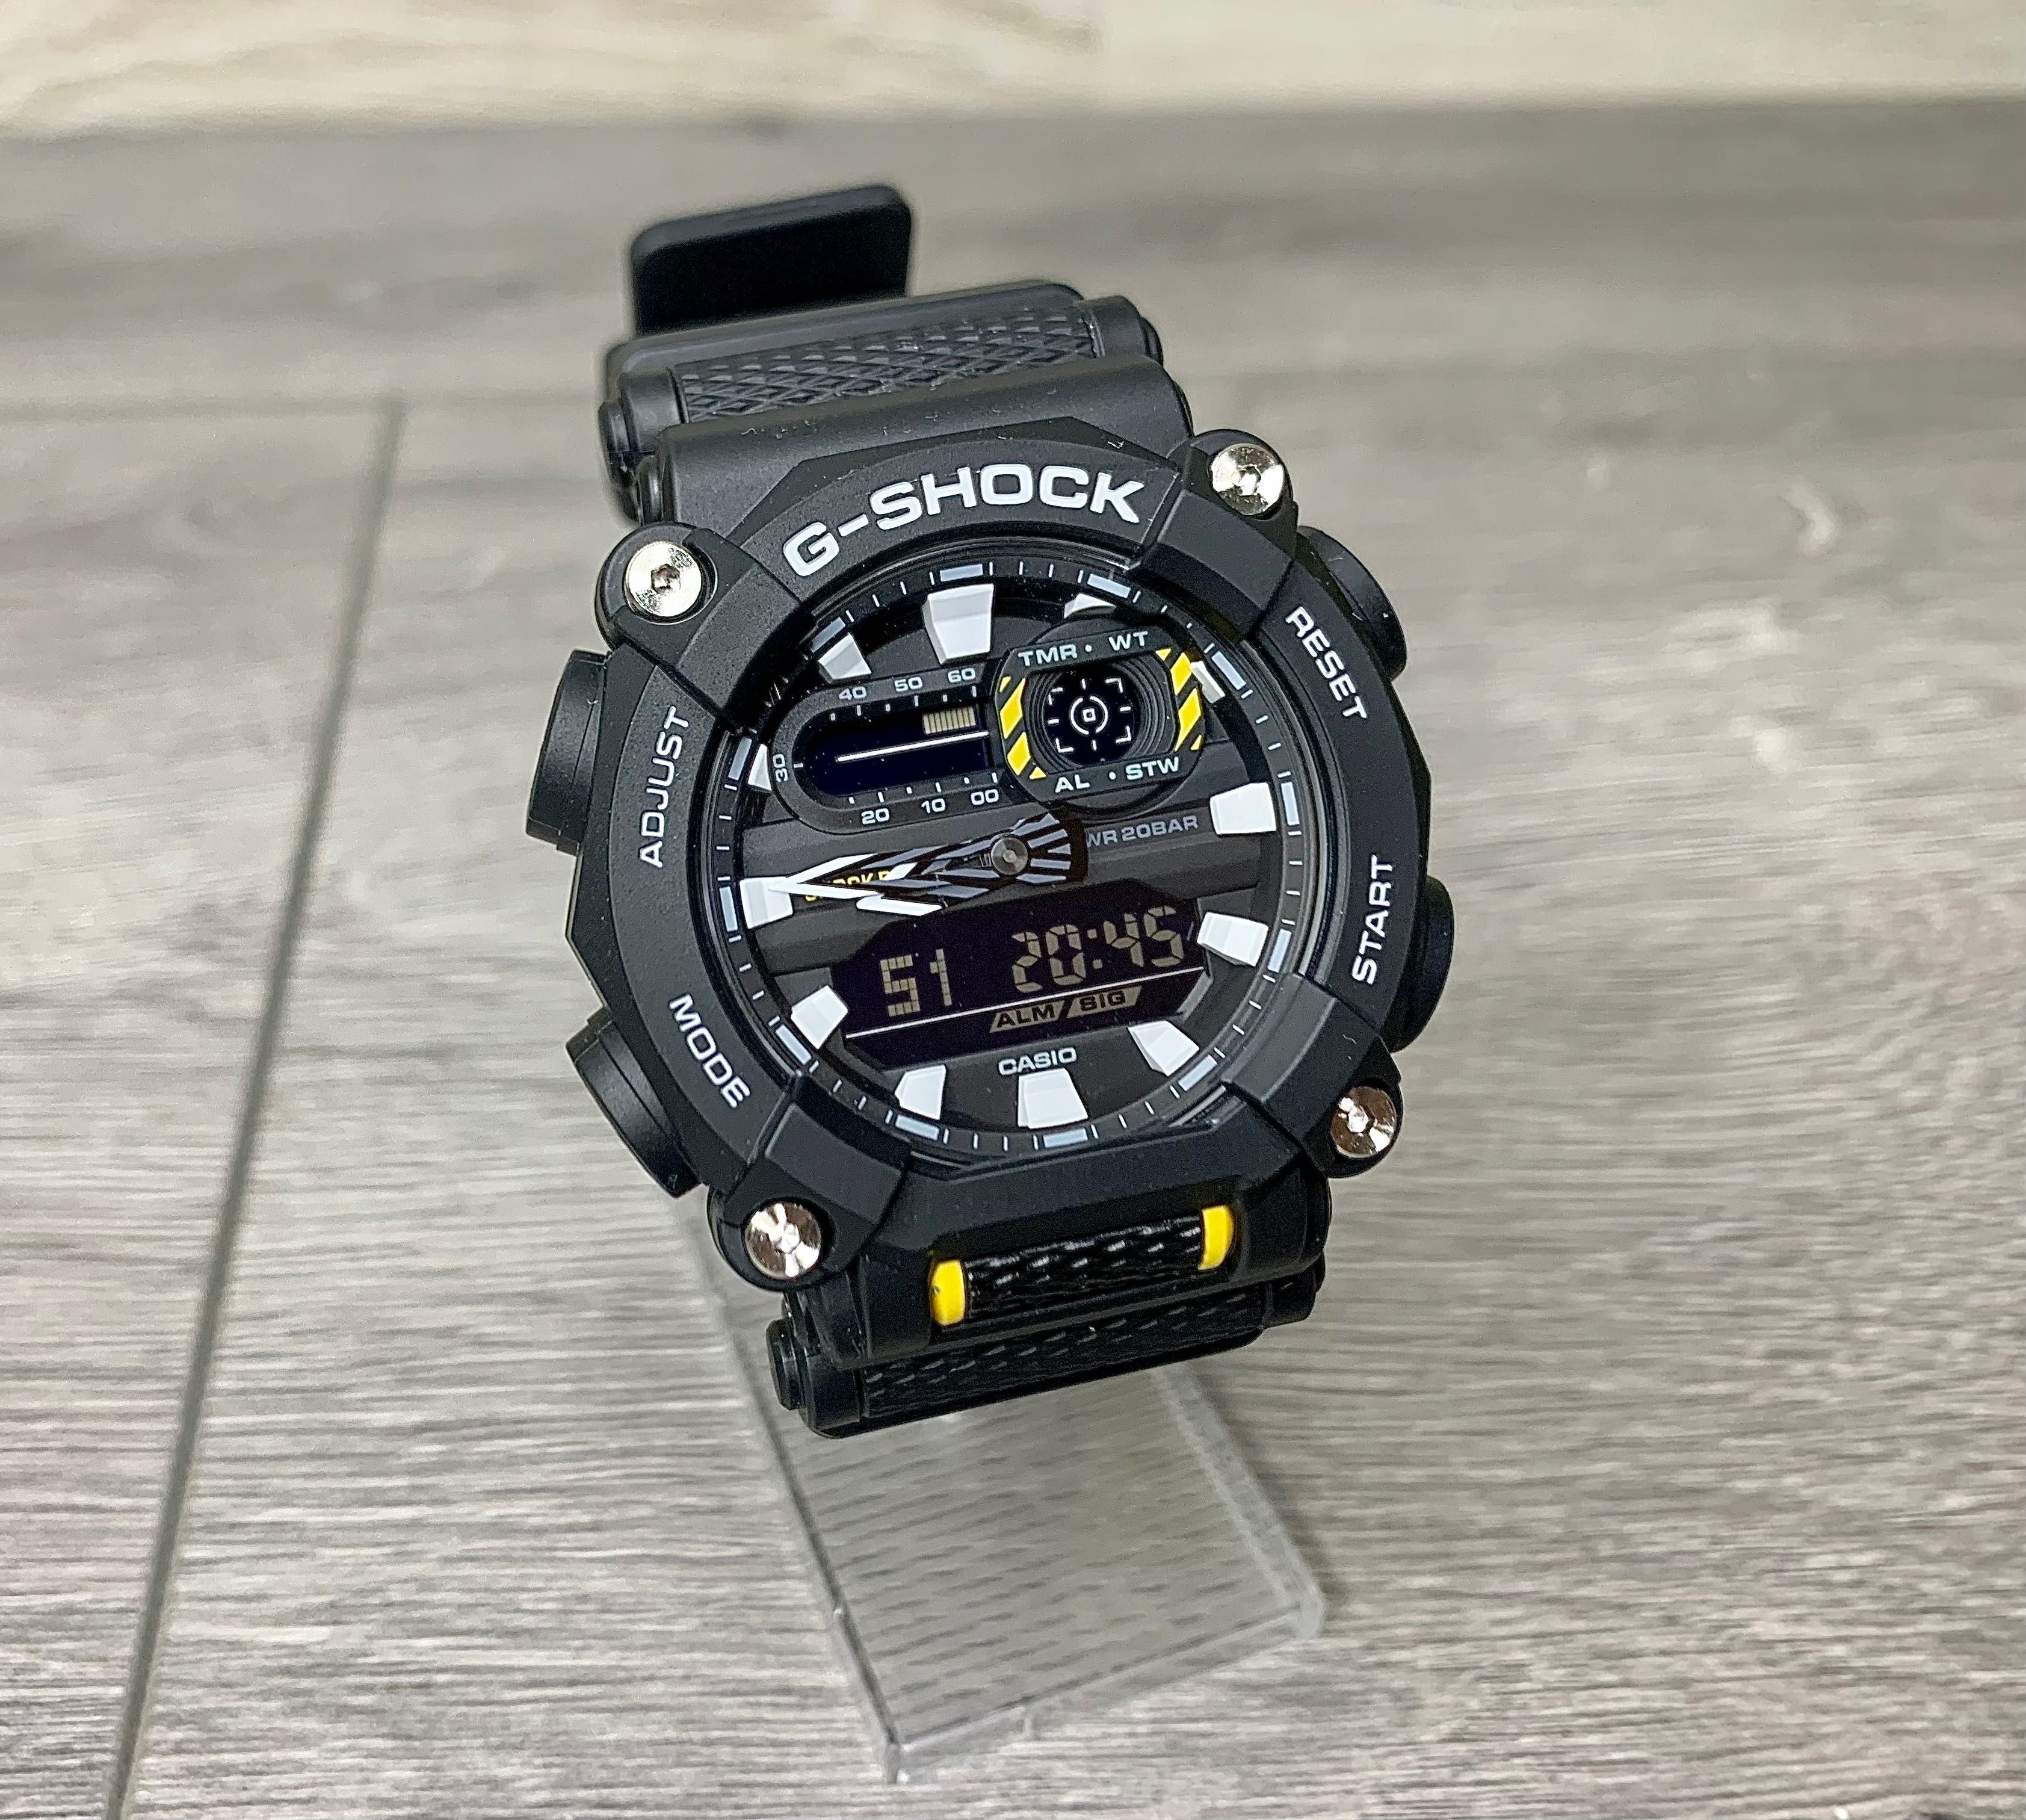 Розпродаж! Супер ціна ! Чоловічий годинник Casio G-Shoсk GA-900-1AER